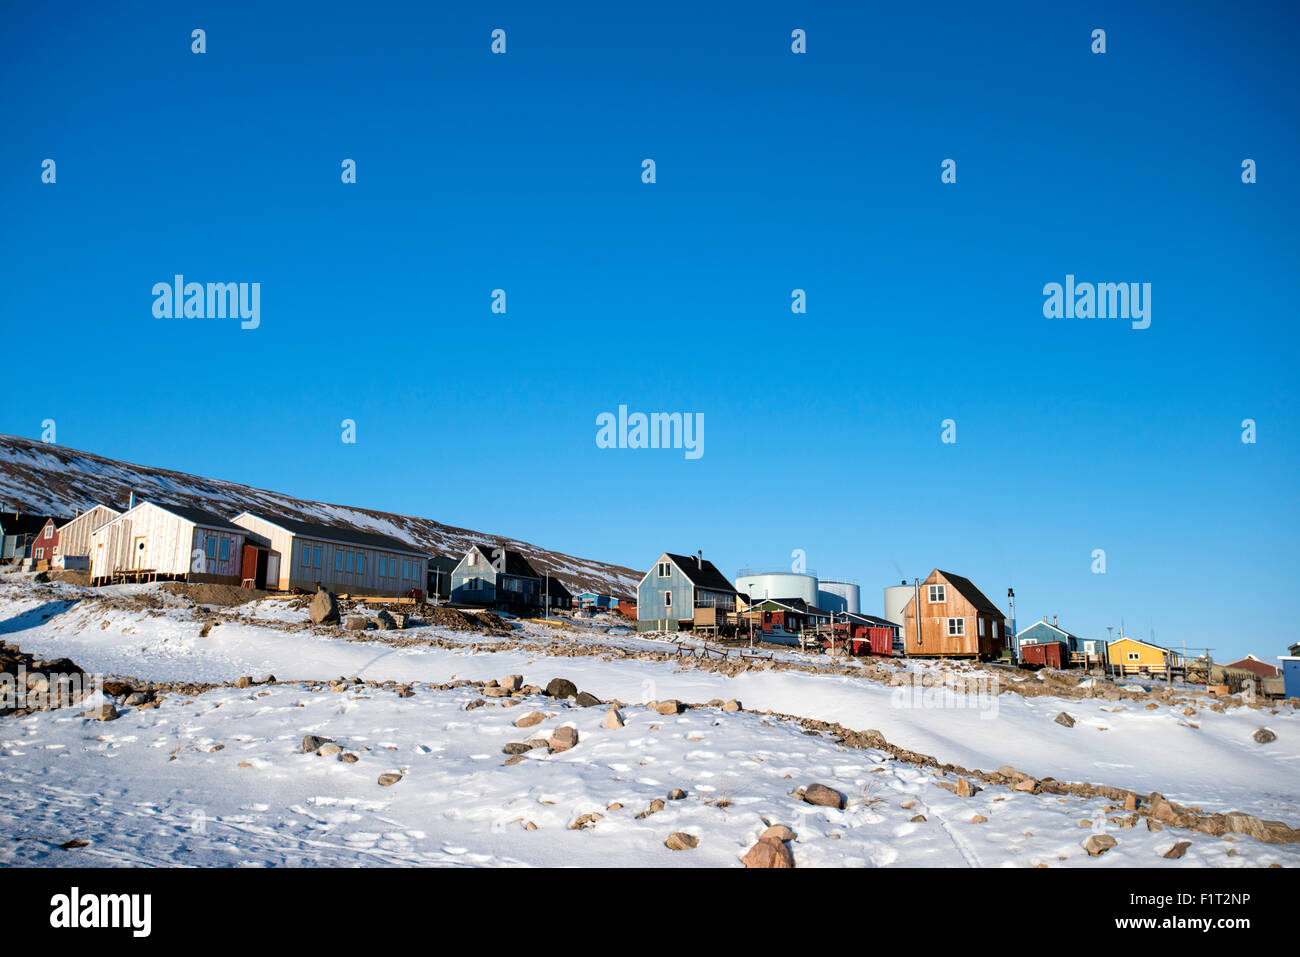 Bunte hölzerne Häuser im Dorf Qaanaaq, eines der nördlichsten Siedlungen auf dem Planeten, Grönland, Dänemark Stockfoto